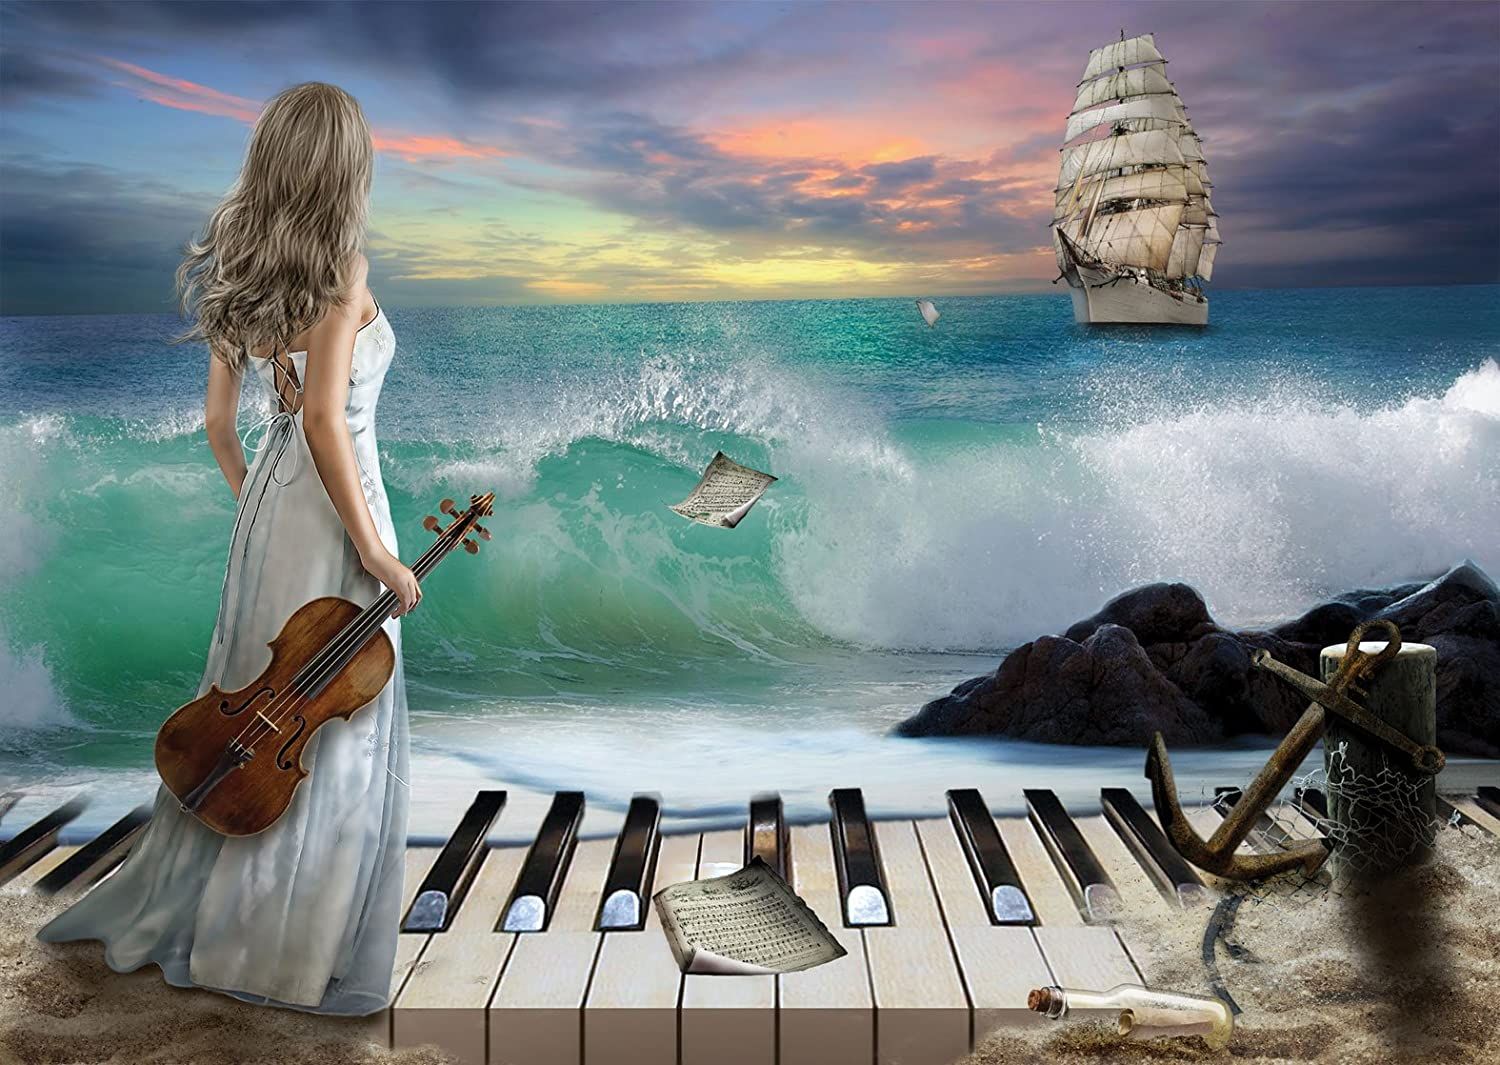 Твоя забытая мечта. Девушка скрипка море. Музыкальный пейзаж. Девушка со скрипкой на берегу моря. Картины Вдохновение.